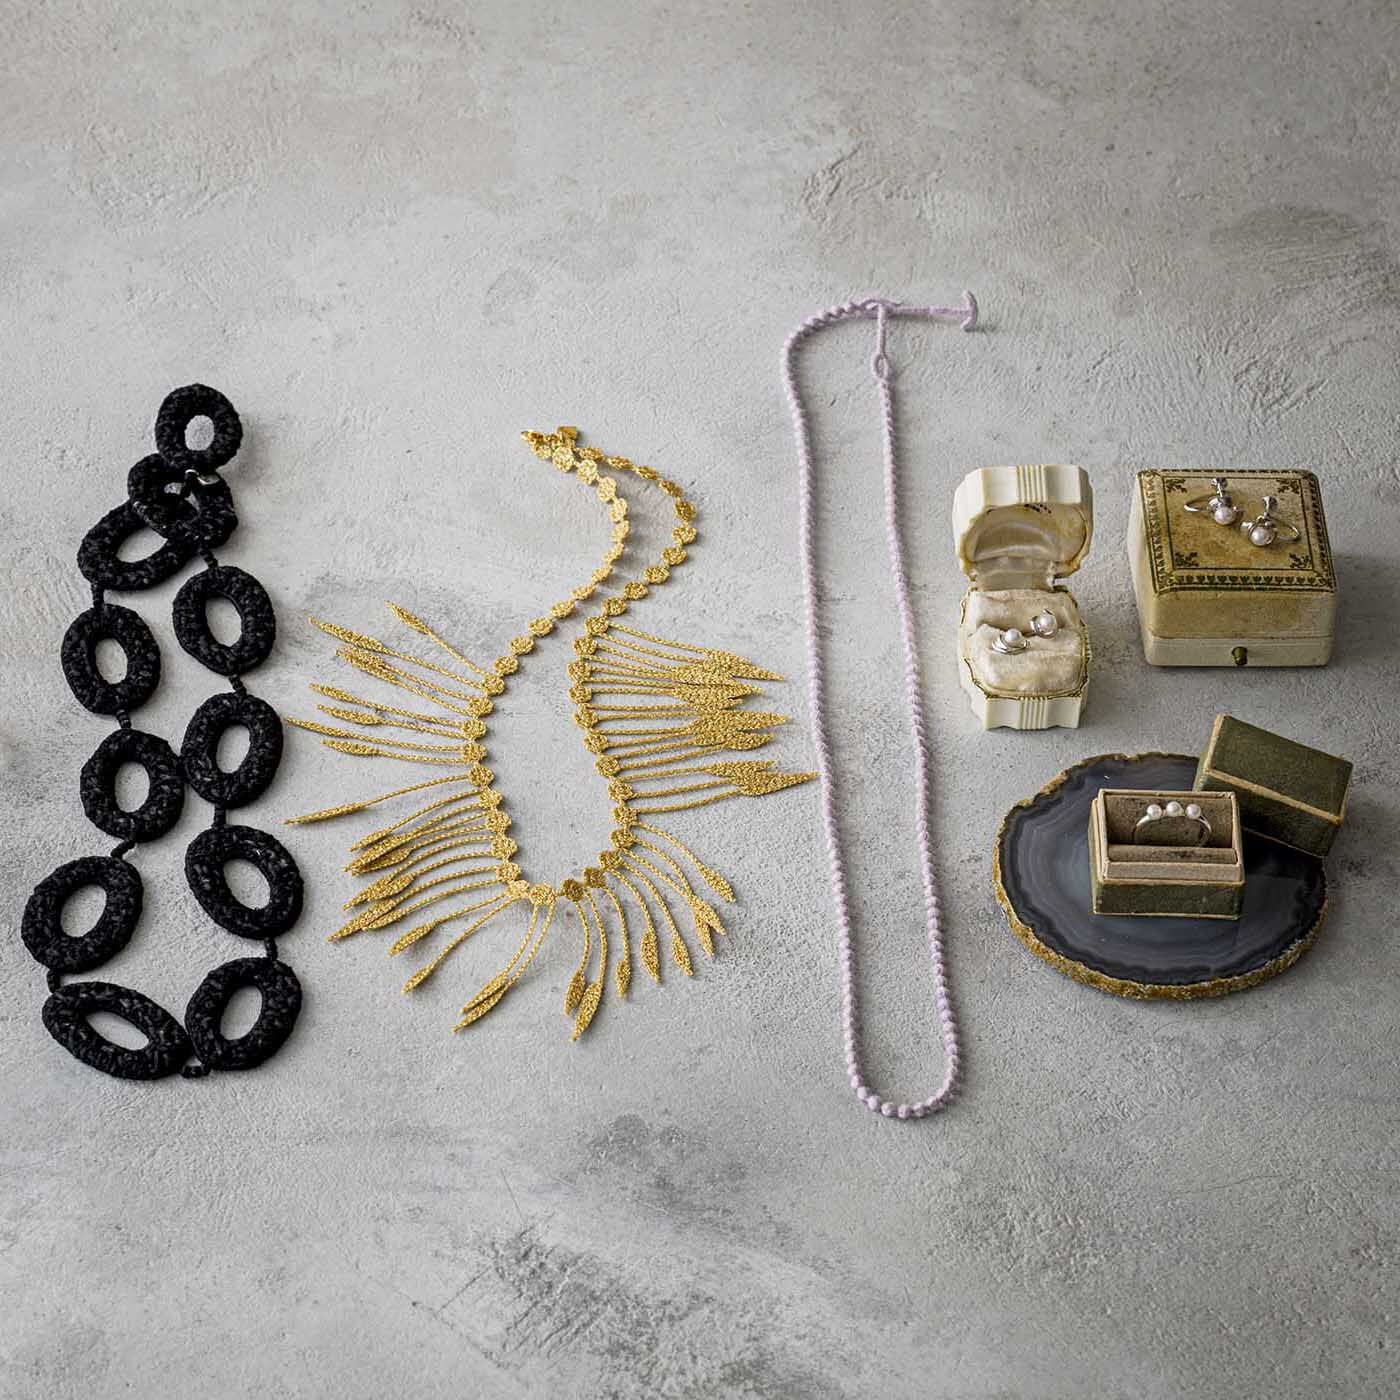 ＆Stories|群馬の刺繍工房が作った 糸の宝石のプランツネックレス〈ゴールド色〉